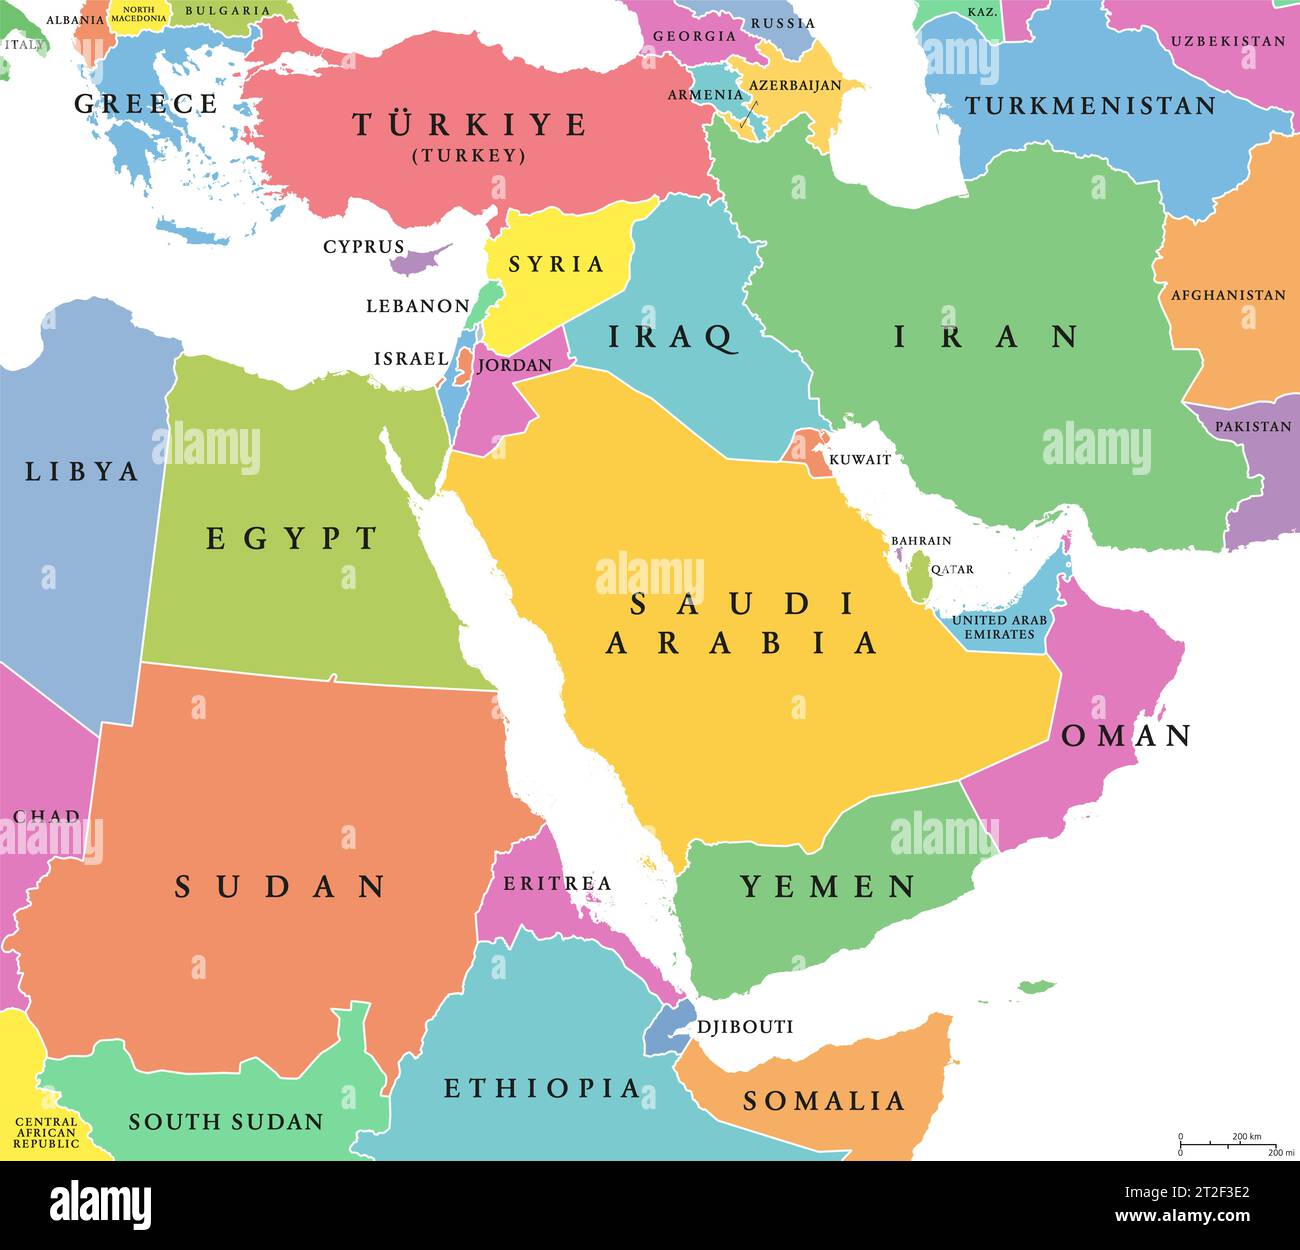 Oriente Medio, países coloreados, mapa político con fronteras internacionales. Región geopolítica, anteriormente conocida como Cercano Oriente. Foto de stock